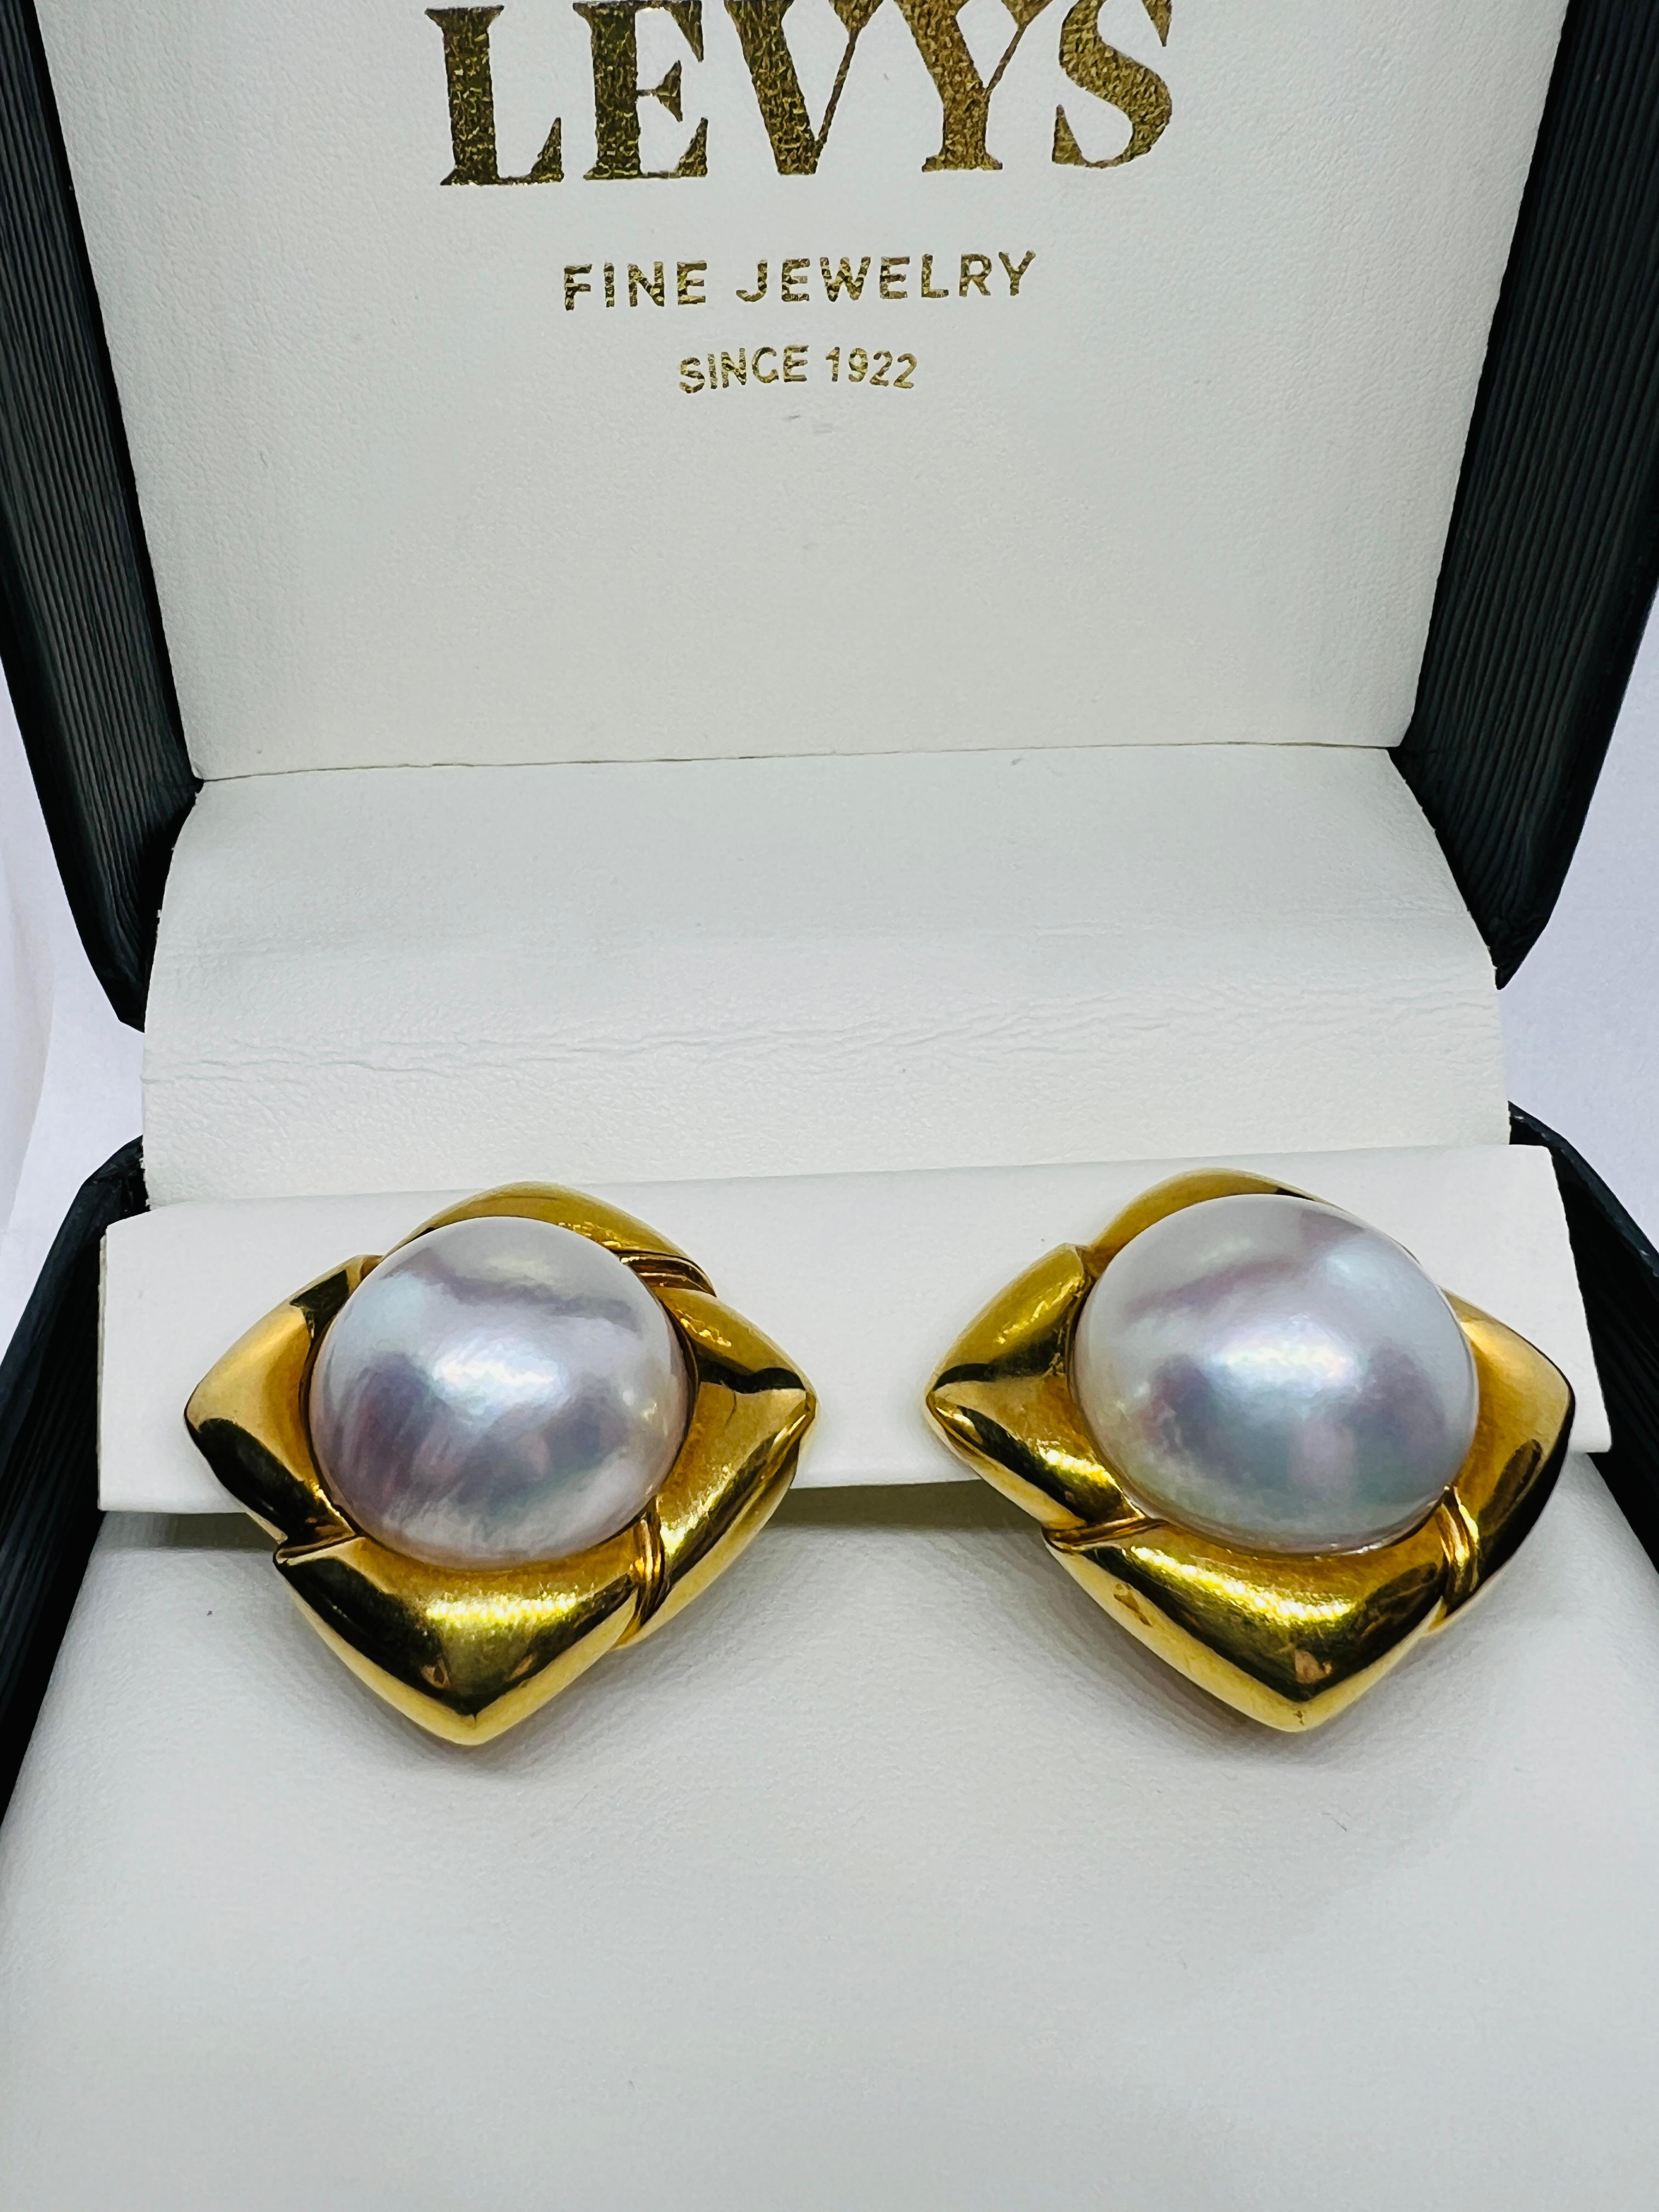 Magnifiques boucles d'oreilles des créateurs de Hammerman Brothers. Elles sont fabriquées en or jaune 18 carats et sont ornées de deux superbes perles More de 8 carats au centre. Ils mesurent un pouce carré et pèsent 35,4 grammes. Veuillez noter